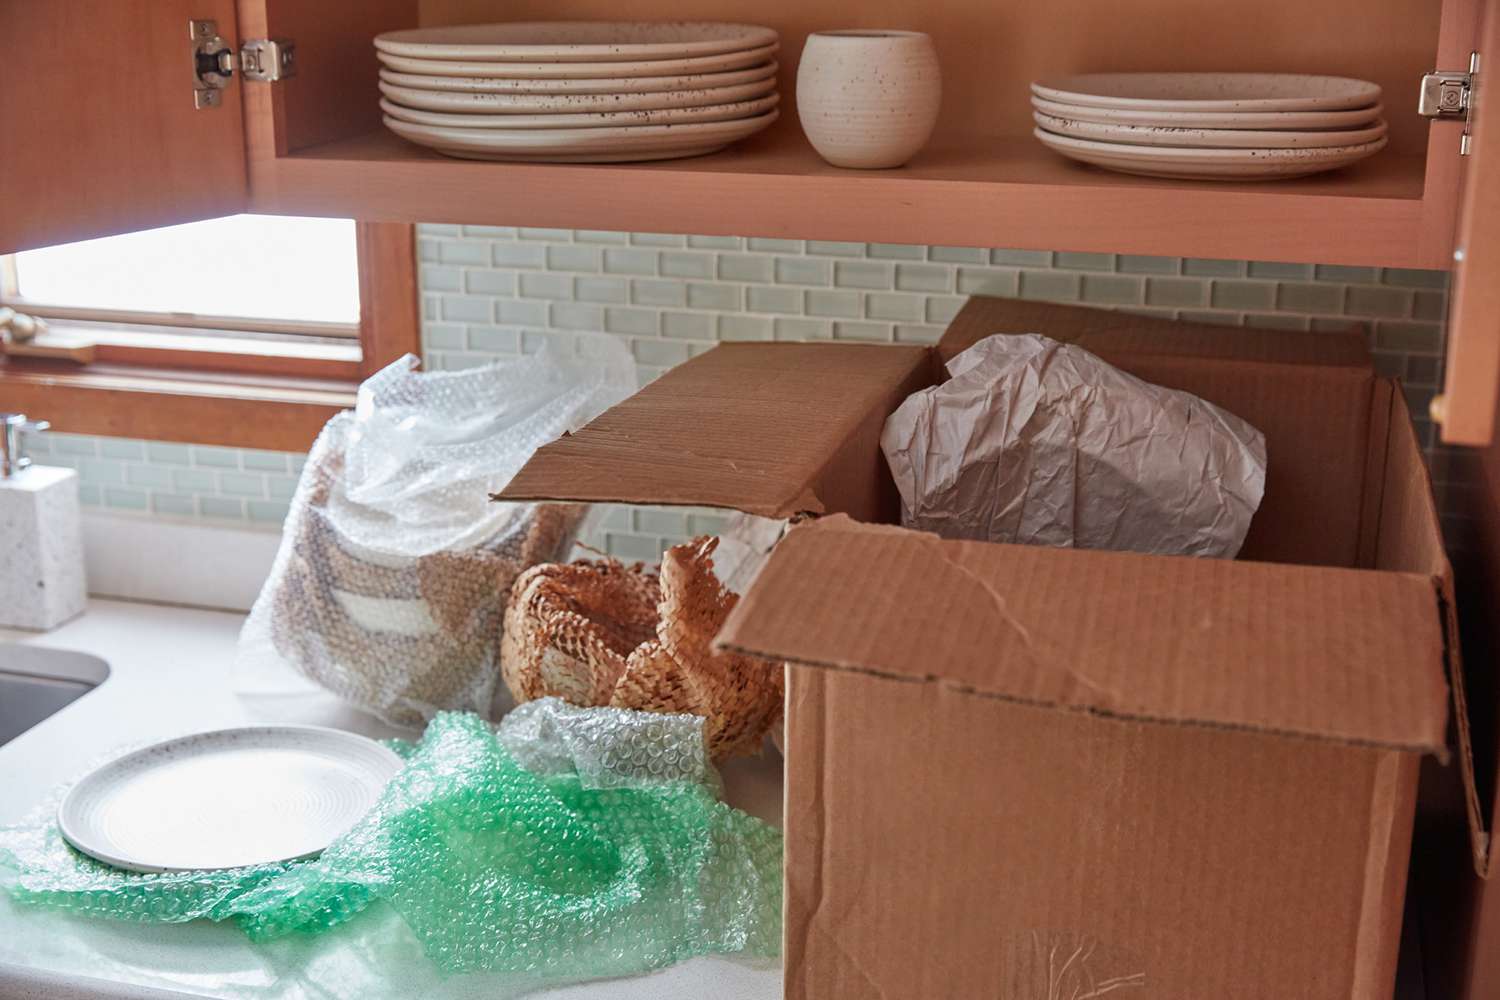 Armoires de cuisine débarrassées de la vaisselle et placées dans une boîte de rangement en carton